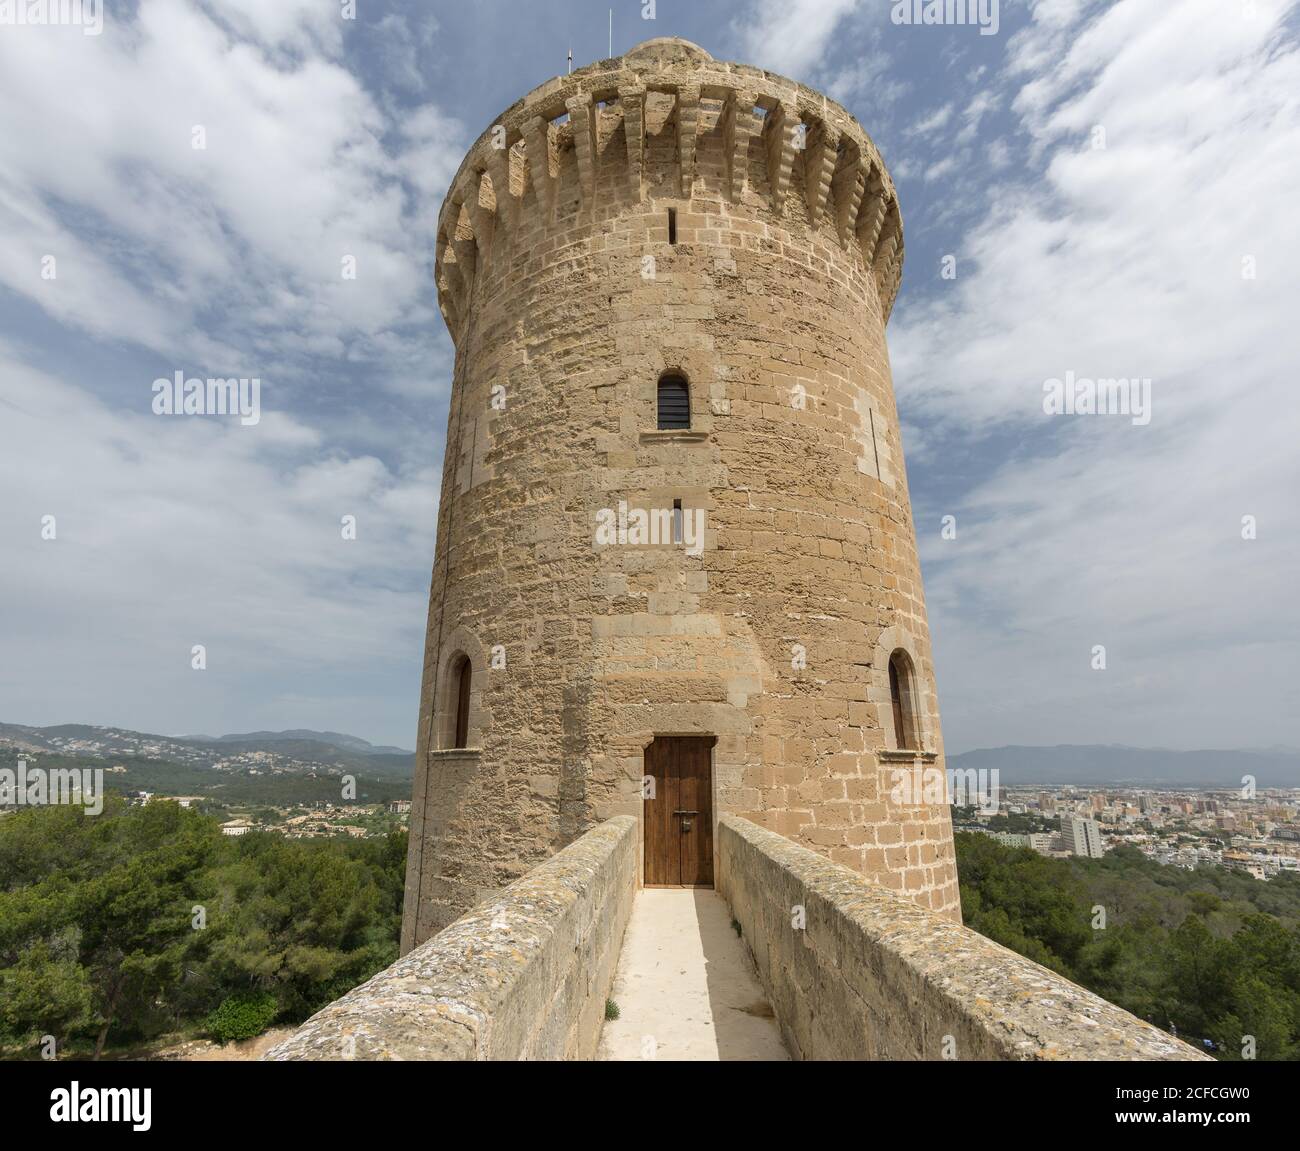 Access bridge to Bellver castle tower, Mallorca Spain Stock Photo